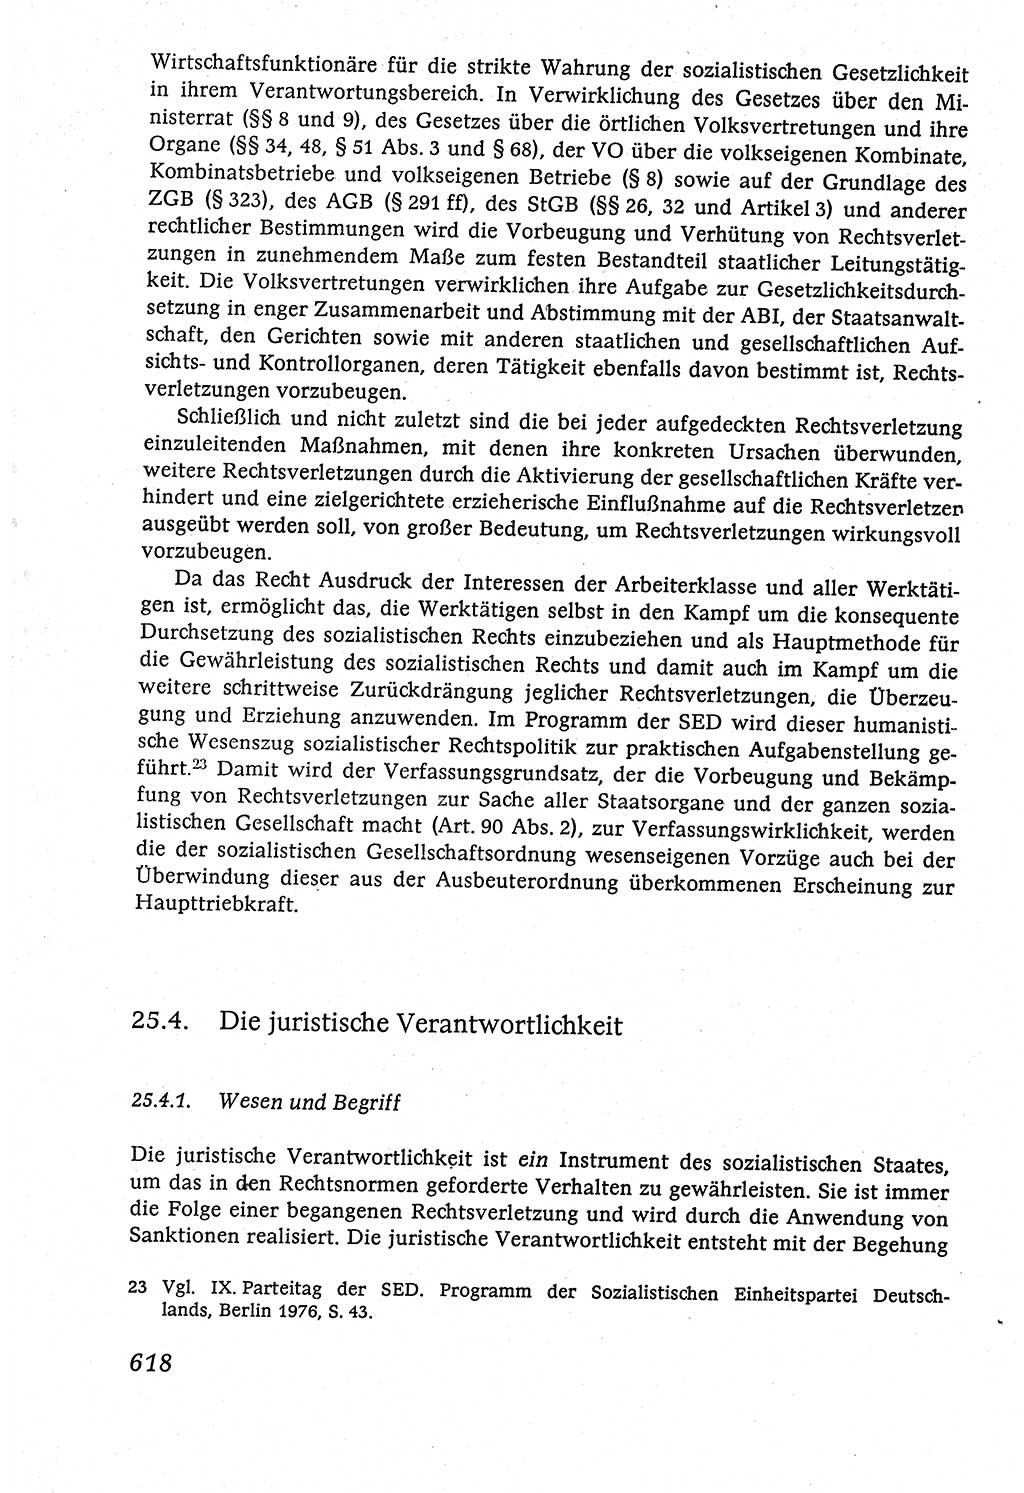 Marxistisch-leninistische (ML) Staats- und Rechtstheorie [Deutsche Demokratische Republik (DDR)], Lehrbuch 1980, Seite 618 (ML St.-R.-Th. DDR Lb. 1980, S. 618)